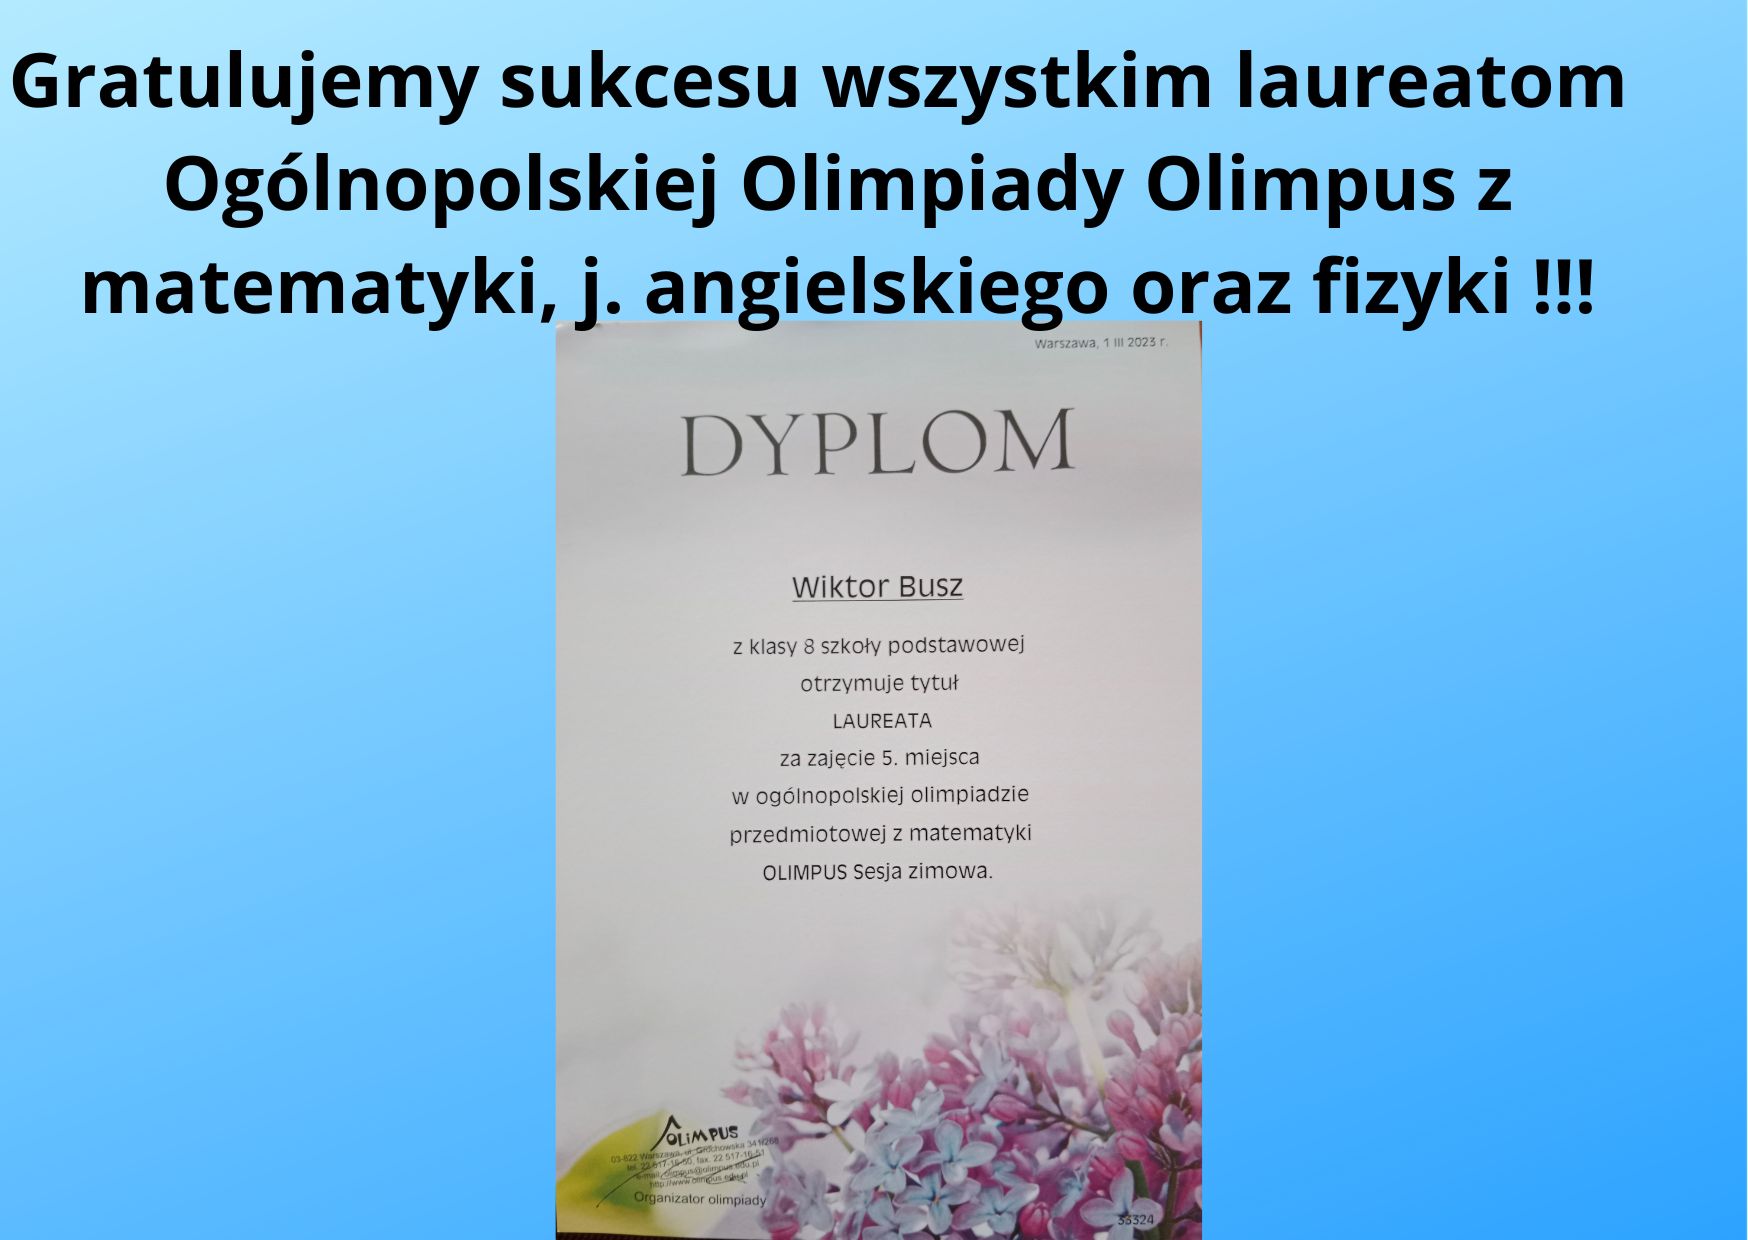 Gratulujemy sukcesu wszystkim laureatom Ogólnolnopolskiej Olimpiady Olimpus z matematyki j. angielskiego oraz fizyki 